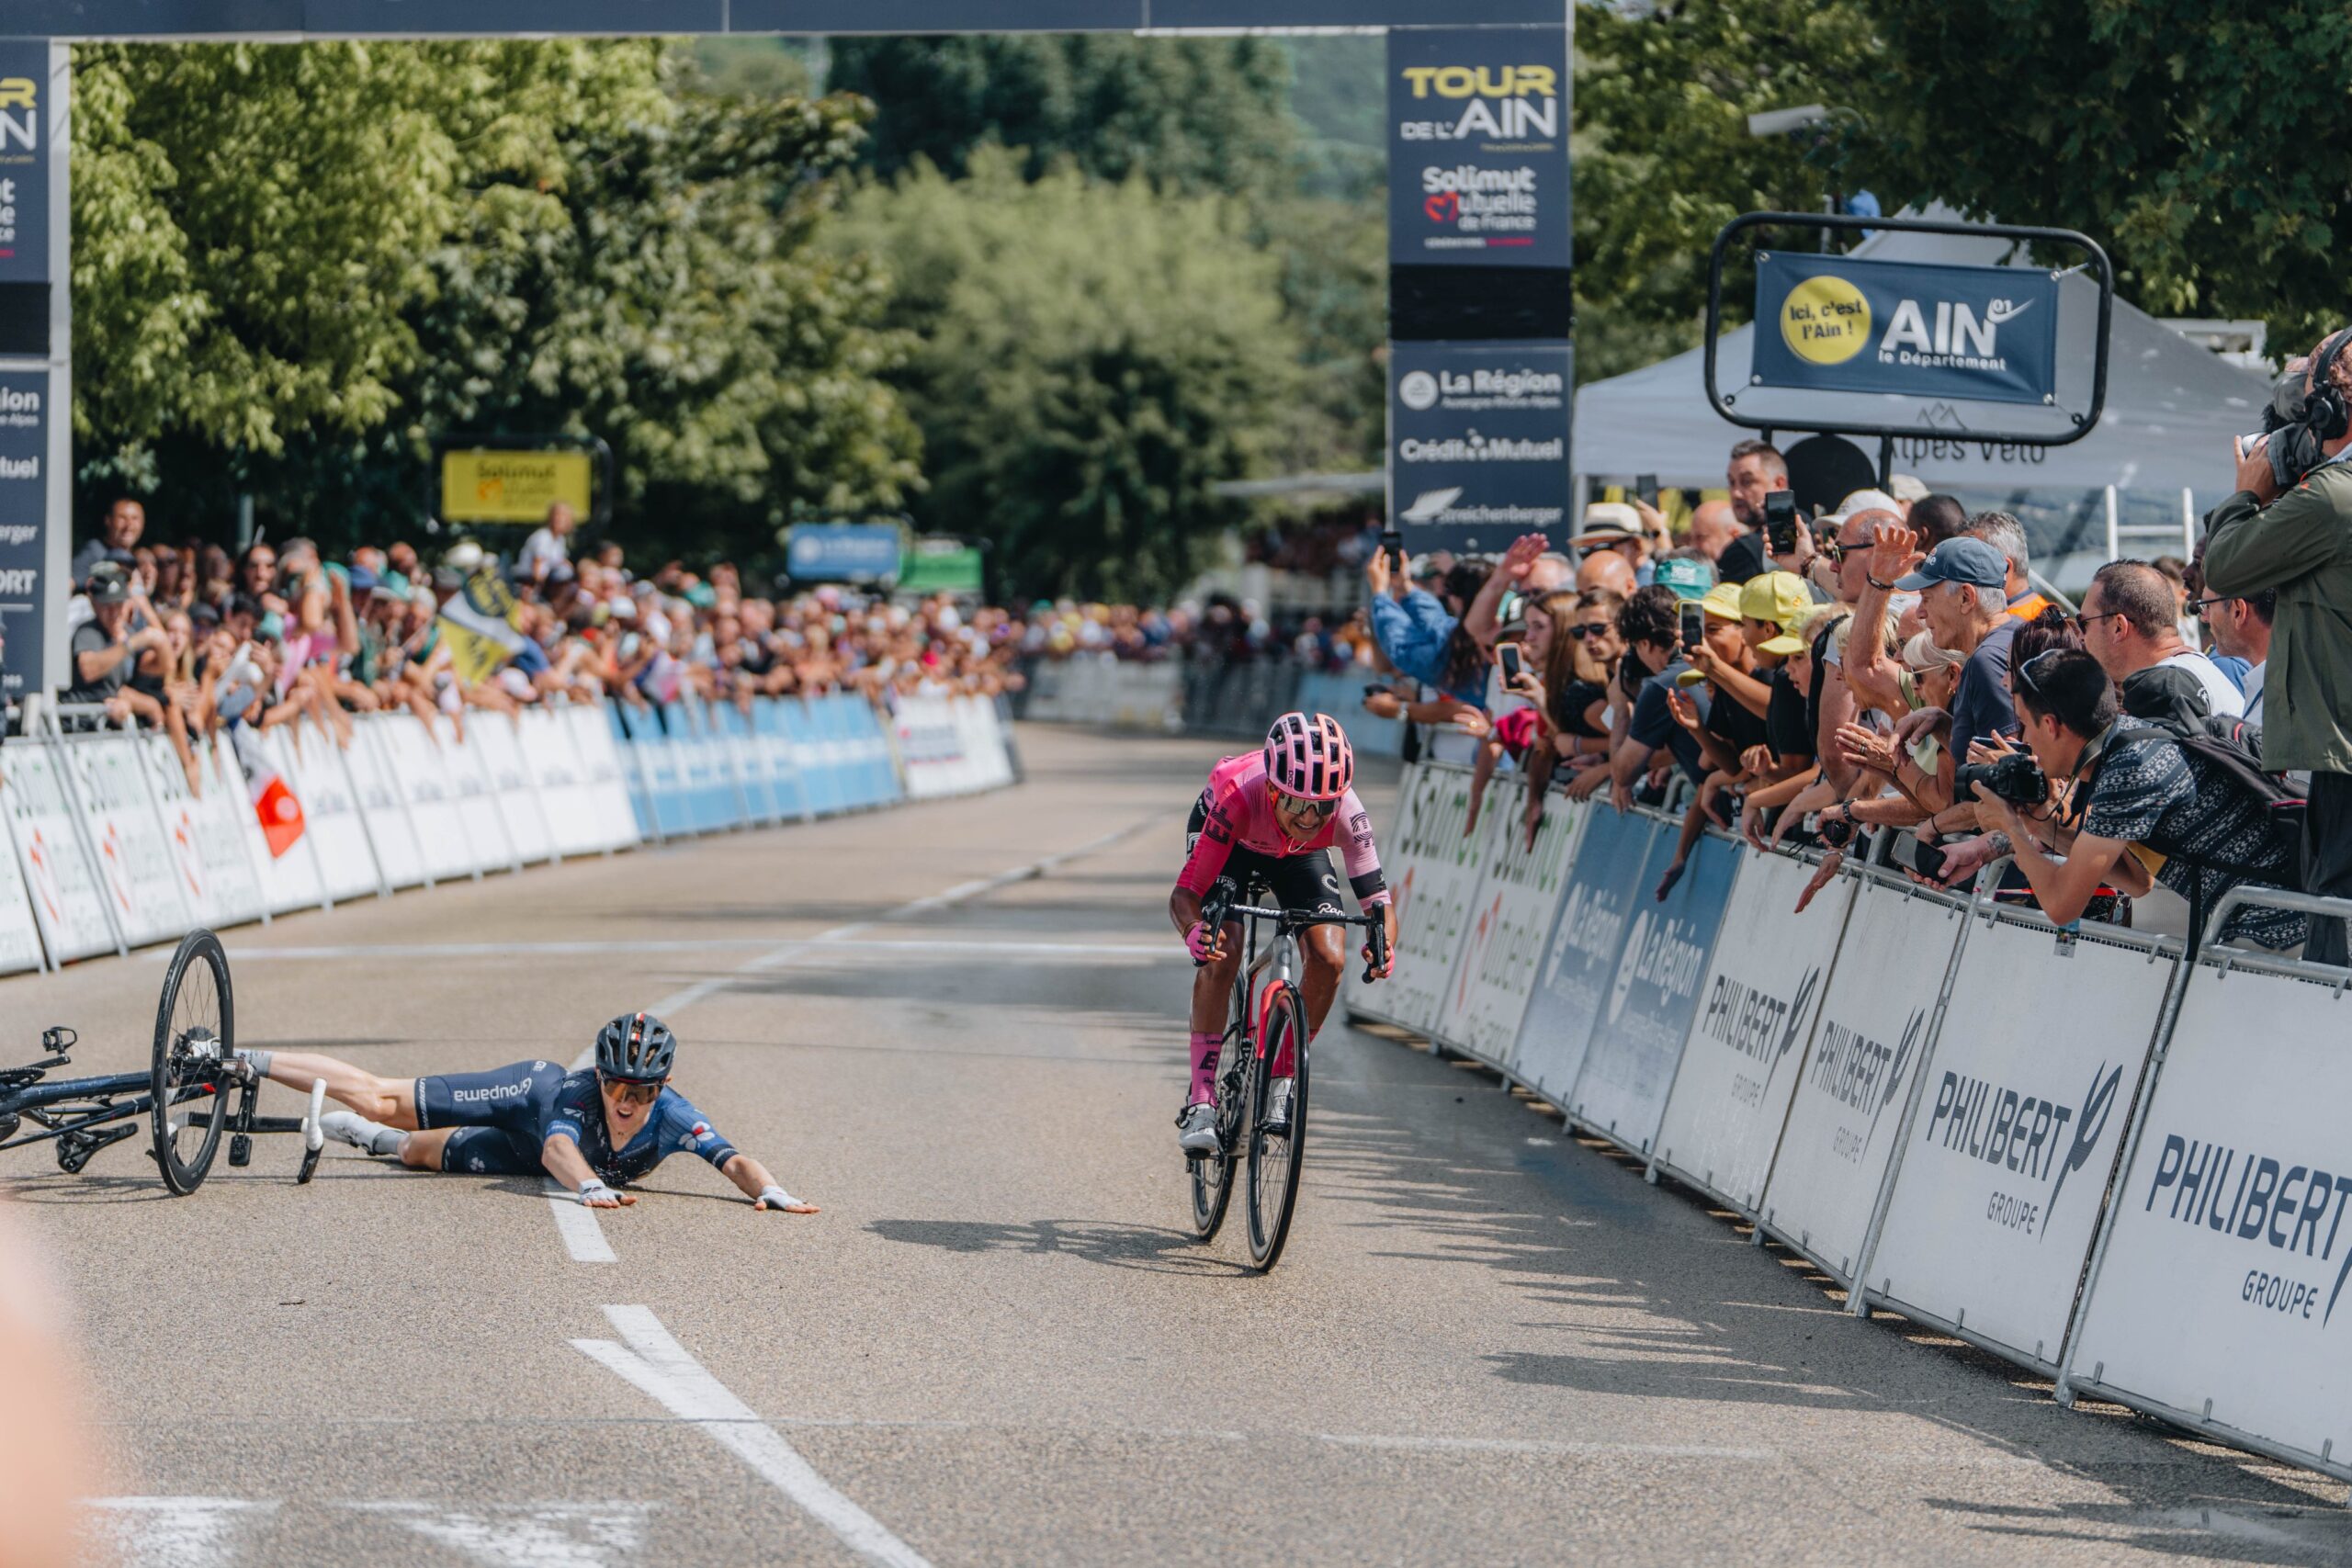 Острая борьба на финише второго этапе велогонки «Тур де л’Эн» закончилась падением одного из велосипедистов